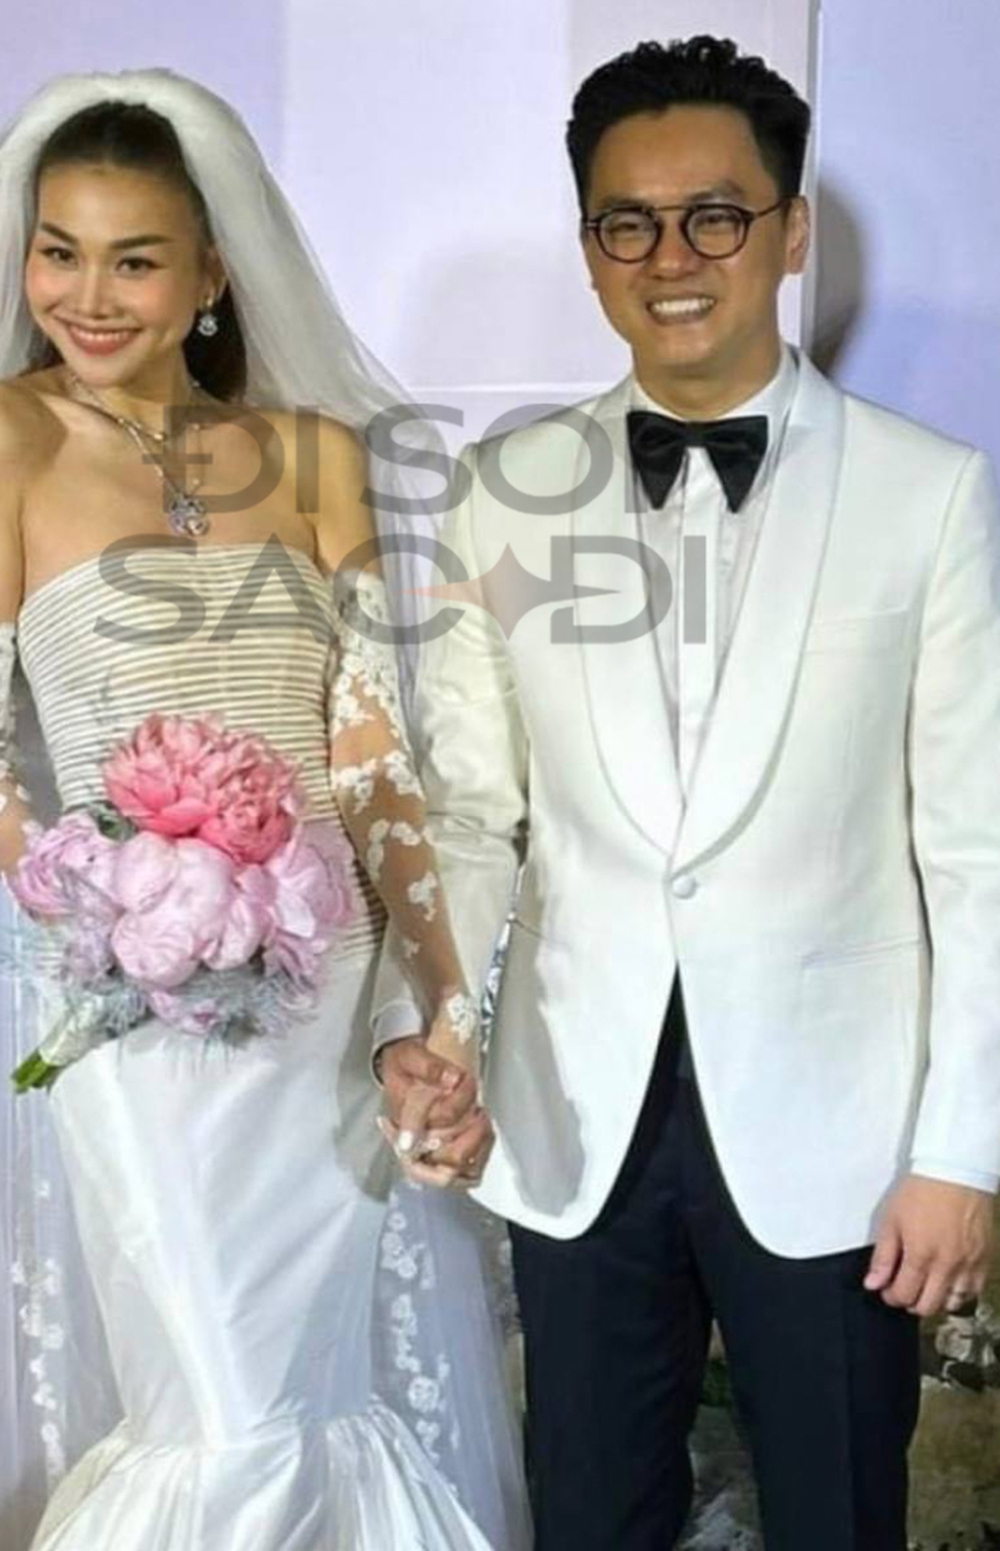 SIÊU HOT: Cô dâu Thanh Hằng lộ diện gợi cảm trong lễ cưới, nắm chặt tay chồng nhạc trưởng - Ảnh 1.